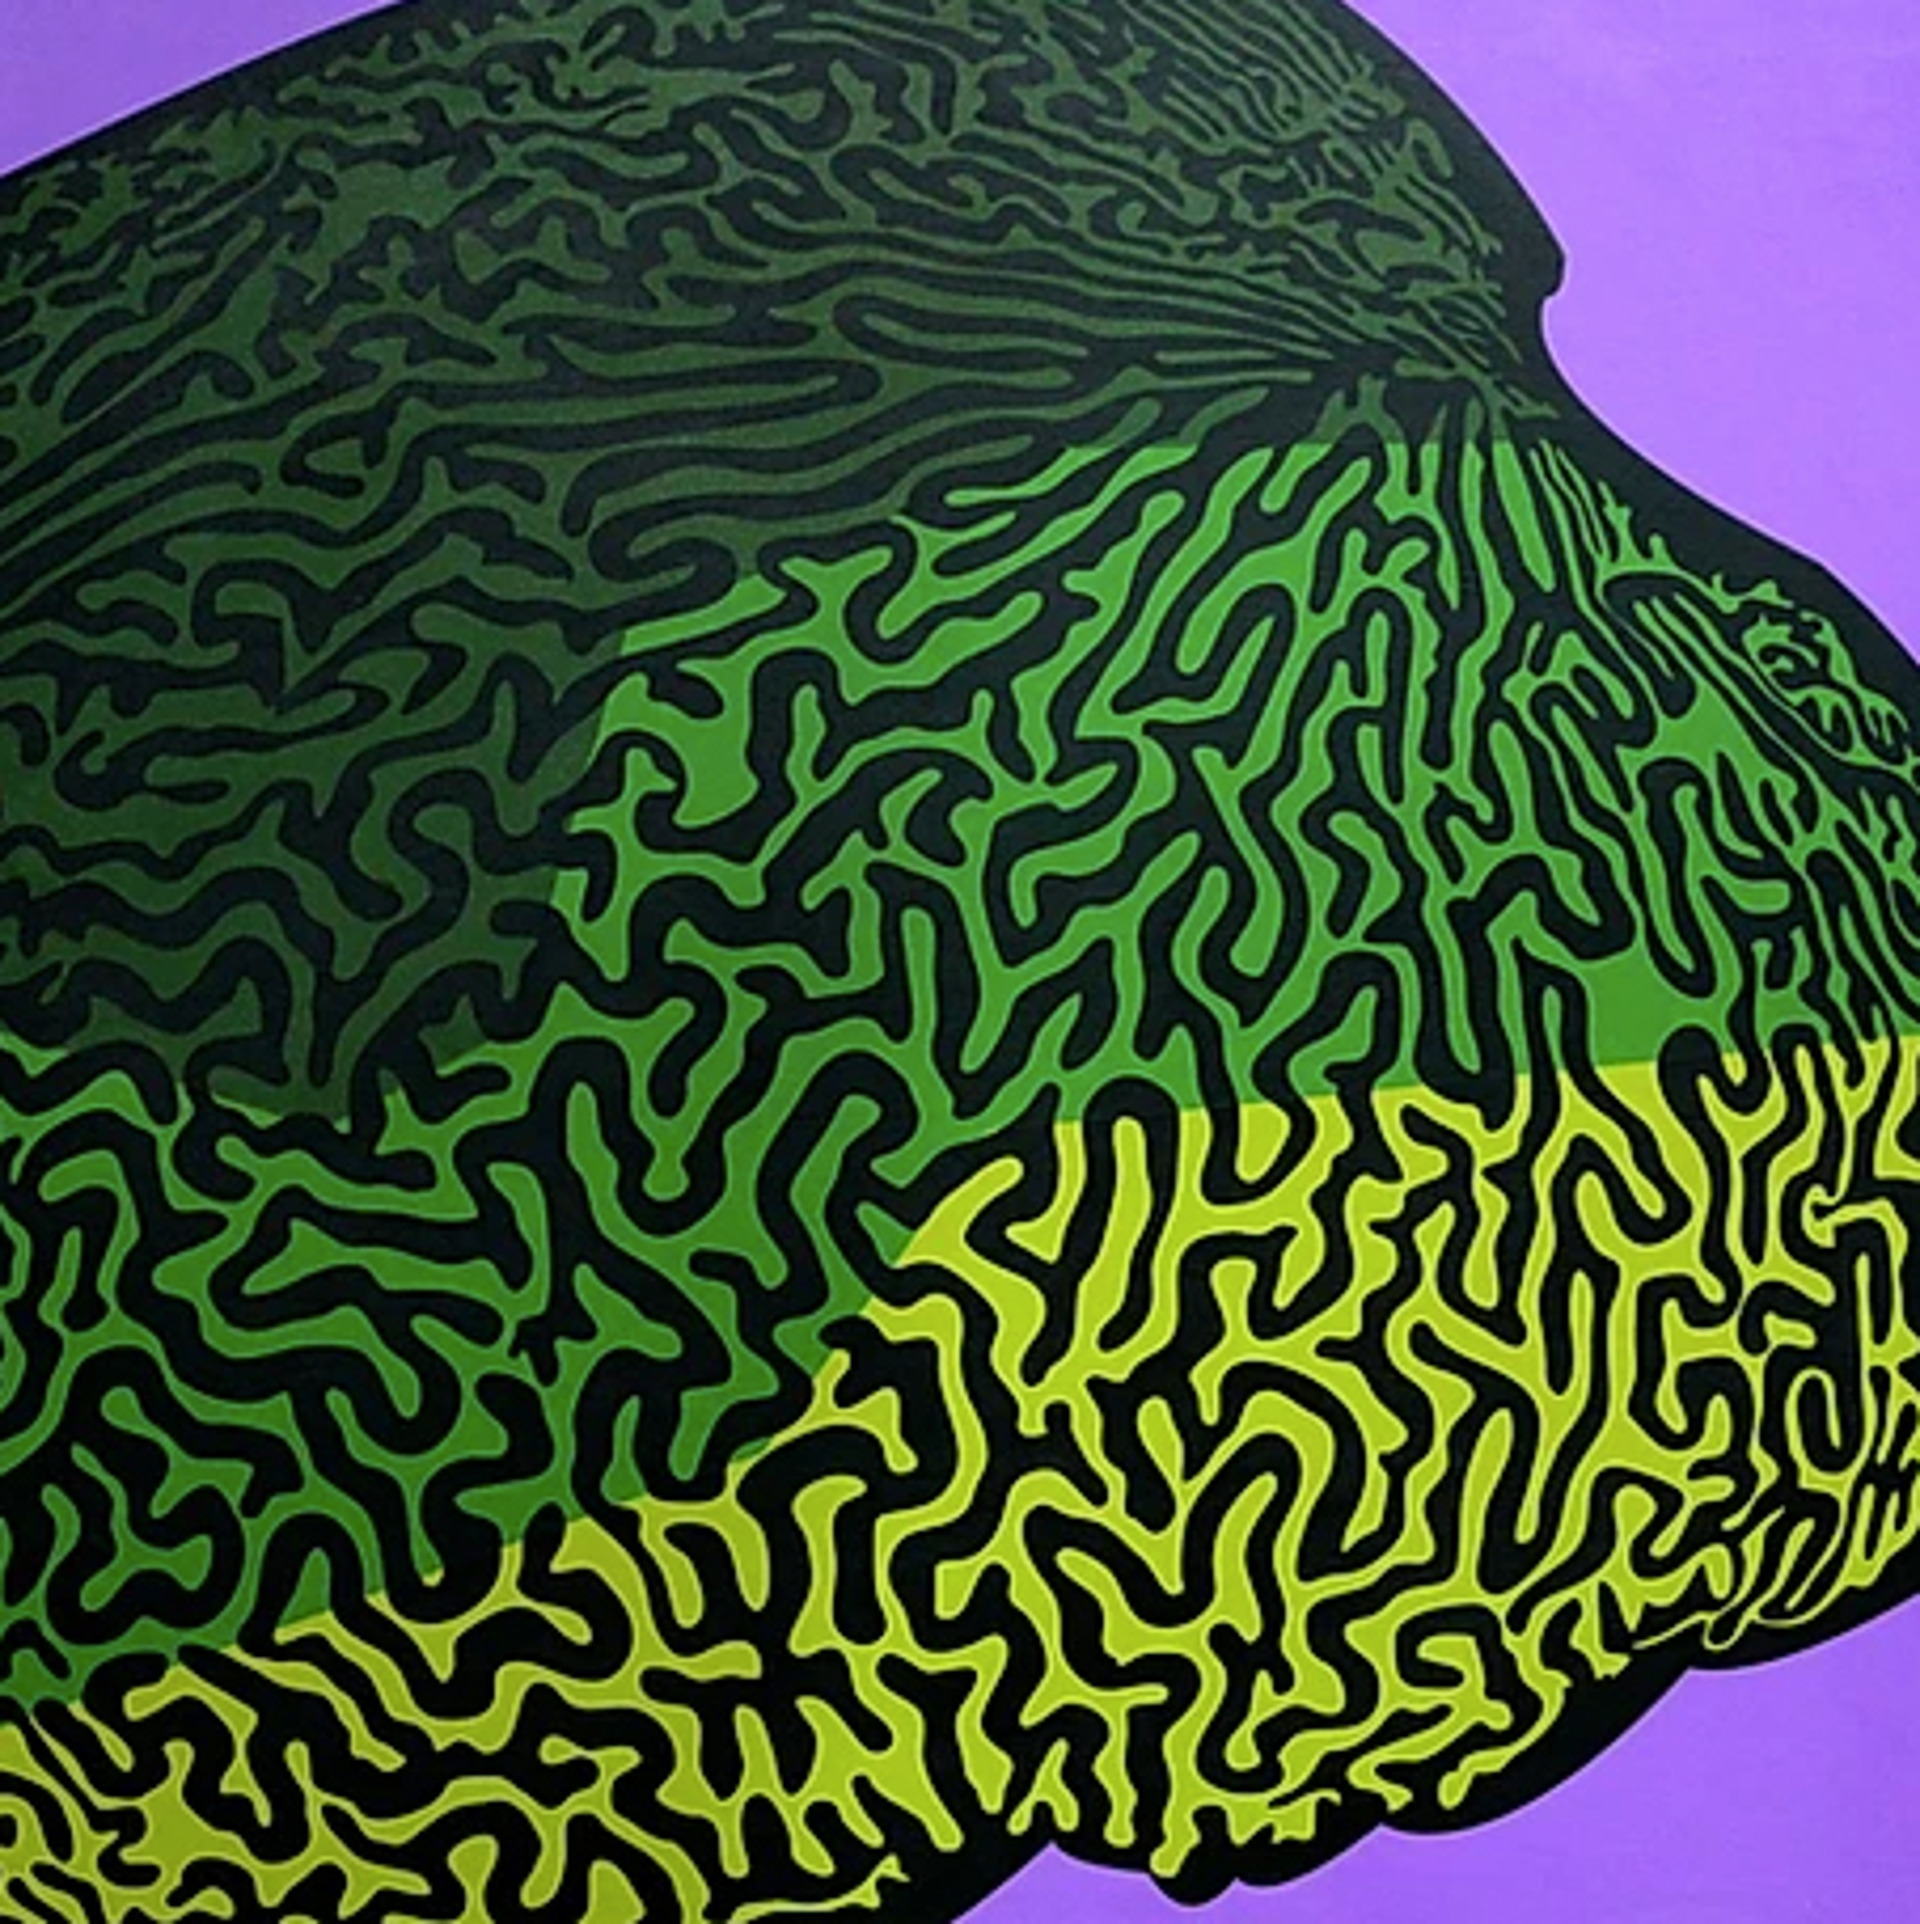 Brain Coral by Eric Ockrassa